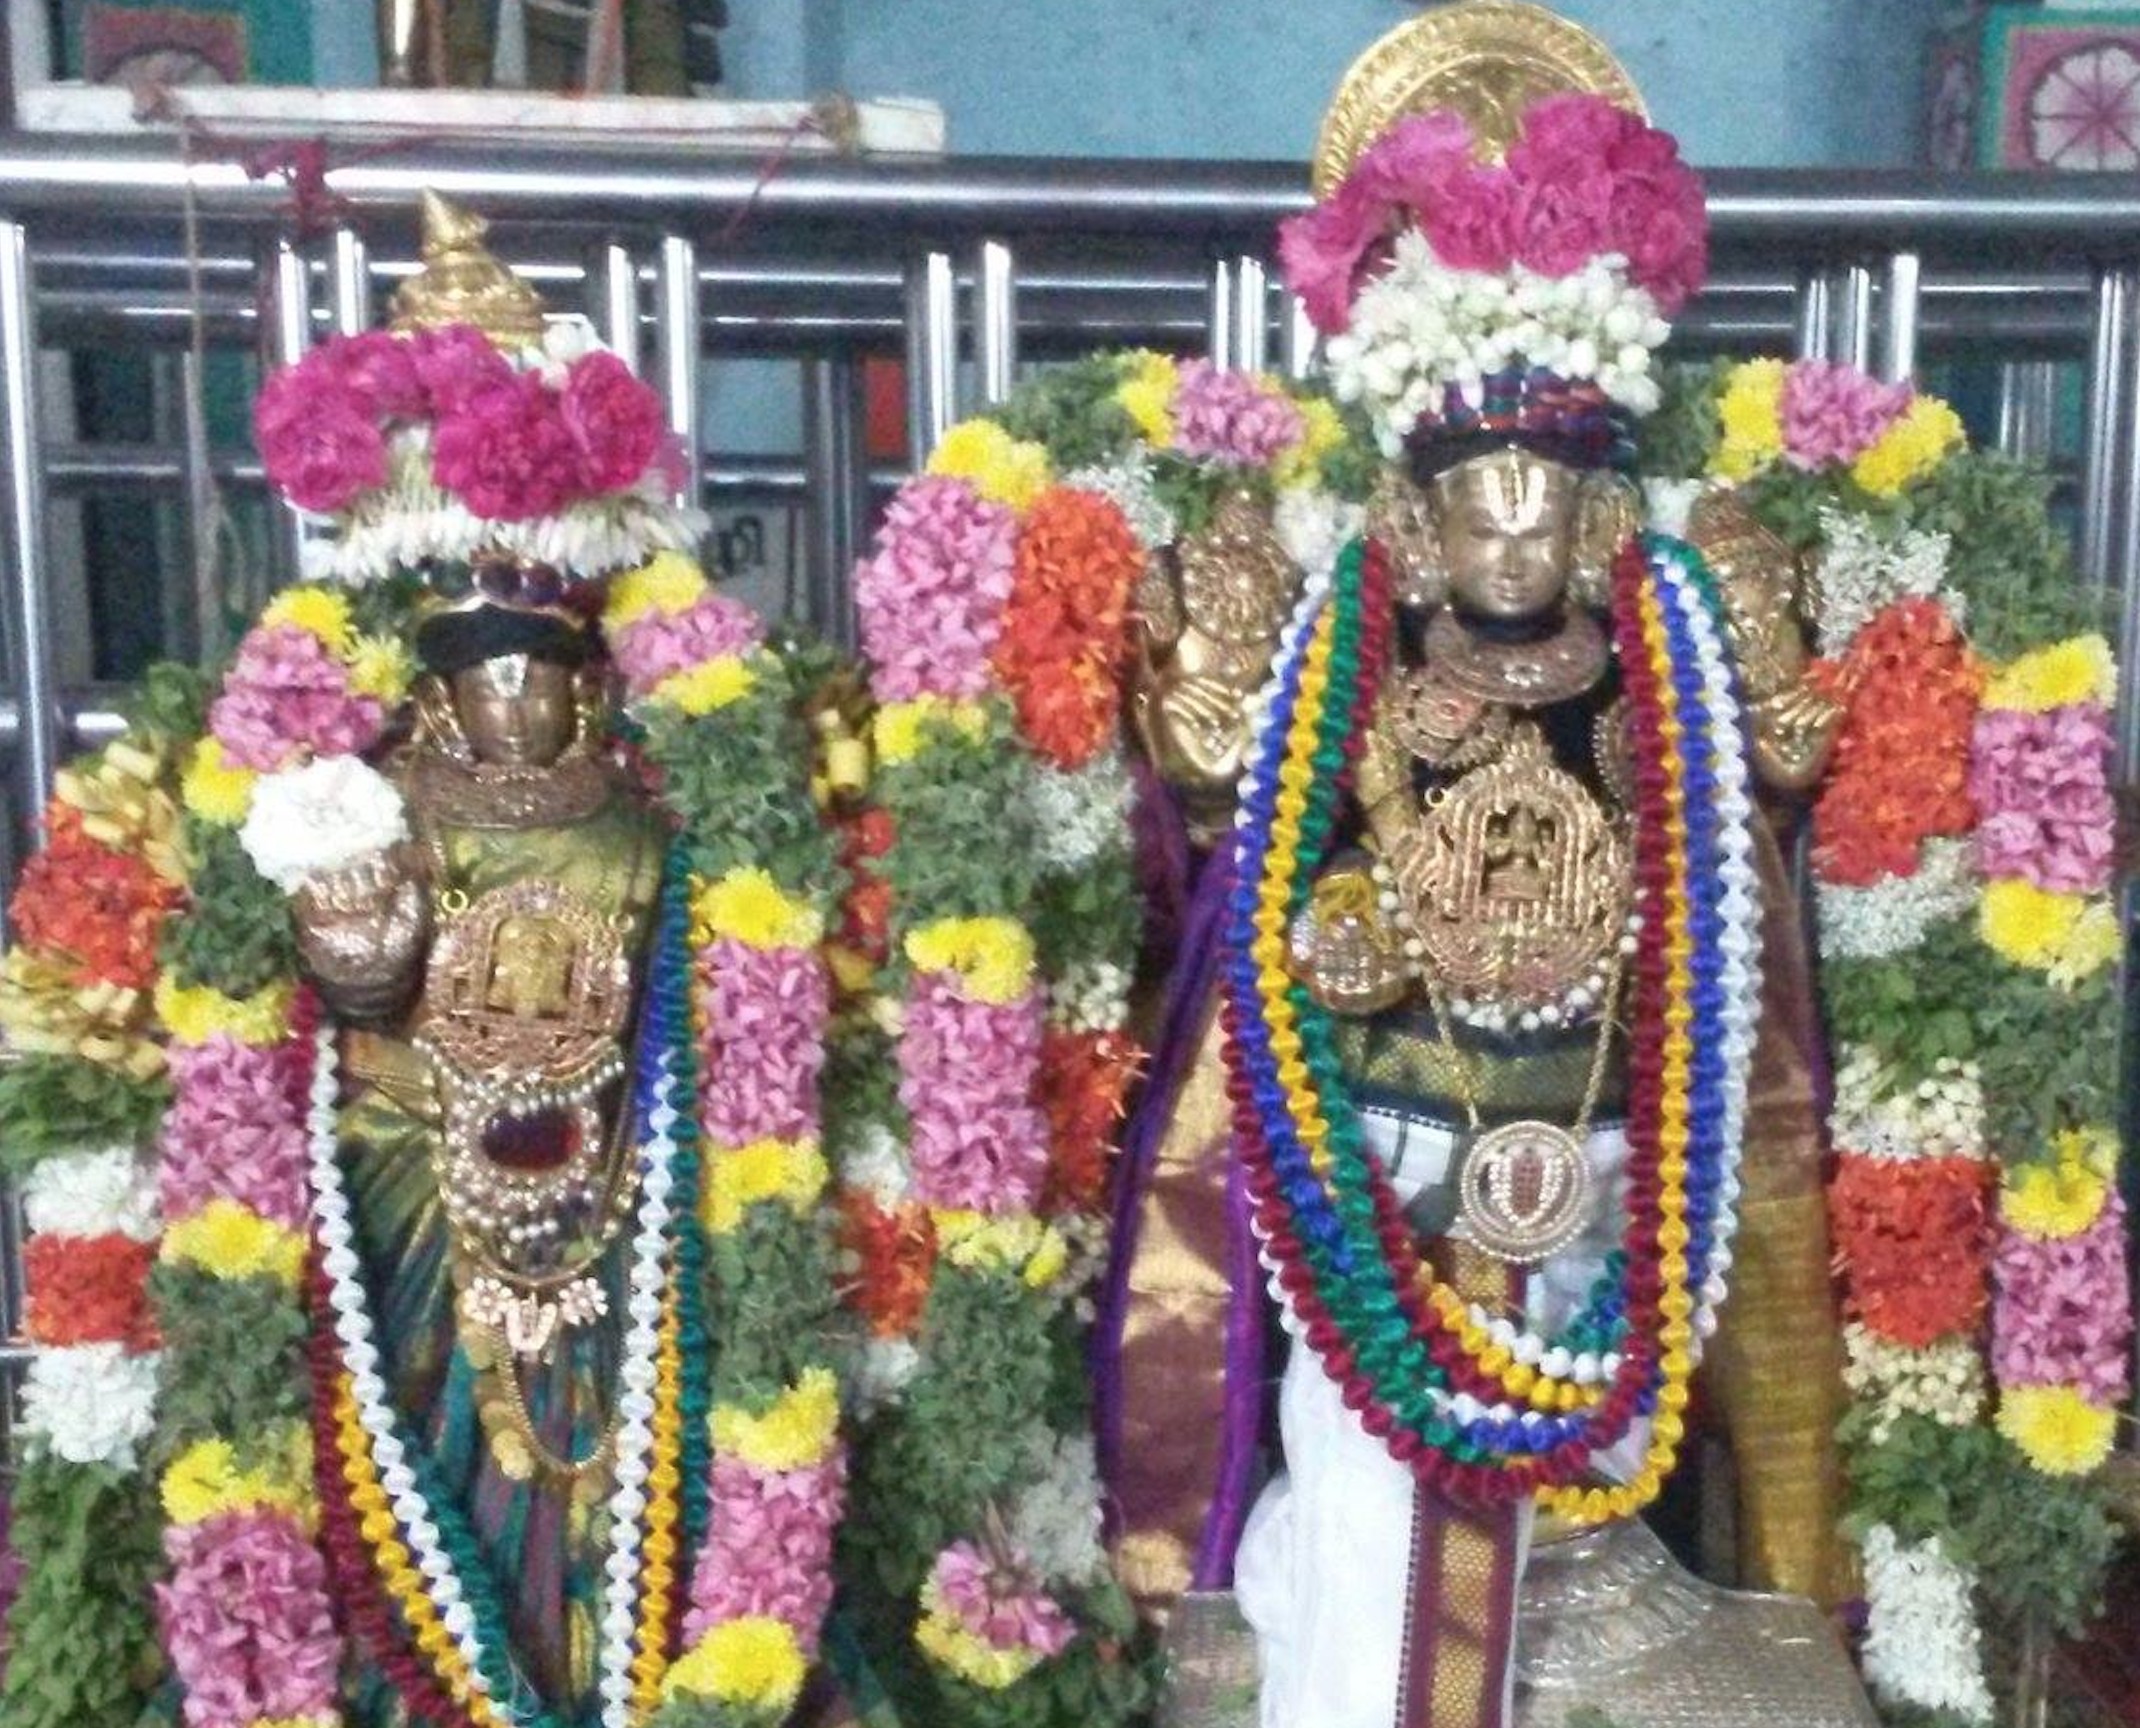 Oppiliappan Temple Pavithrotsavam day 3